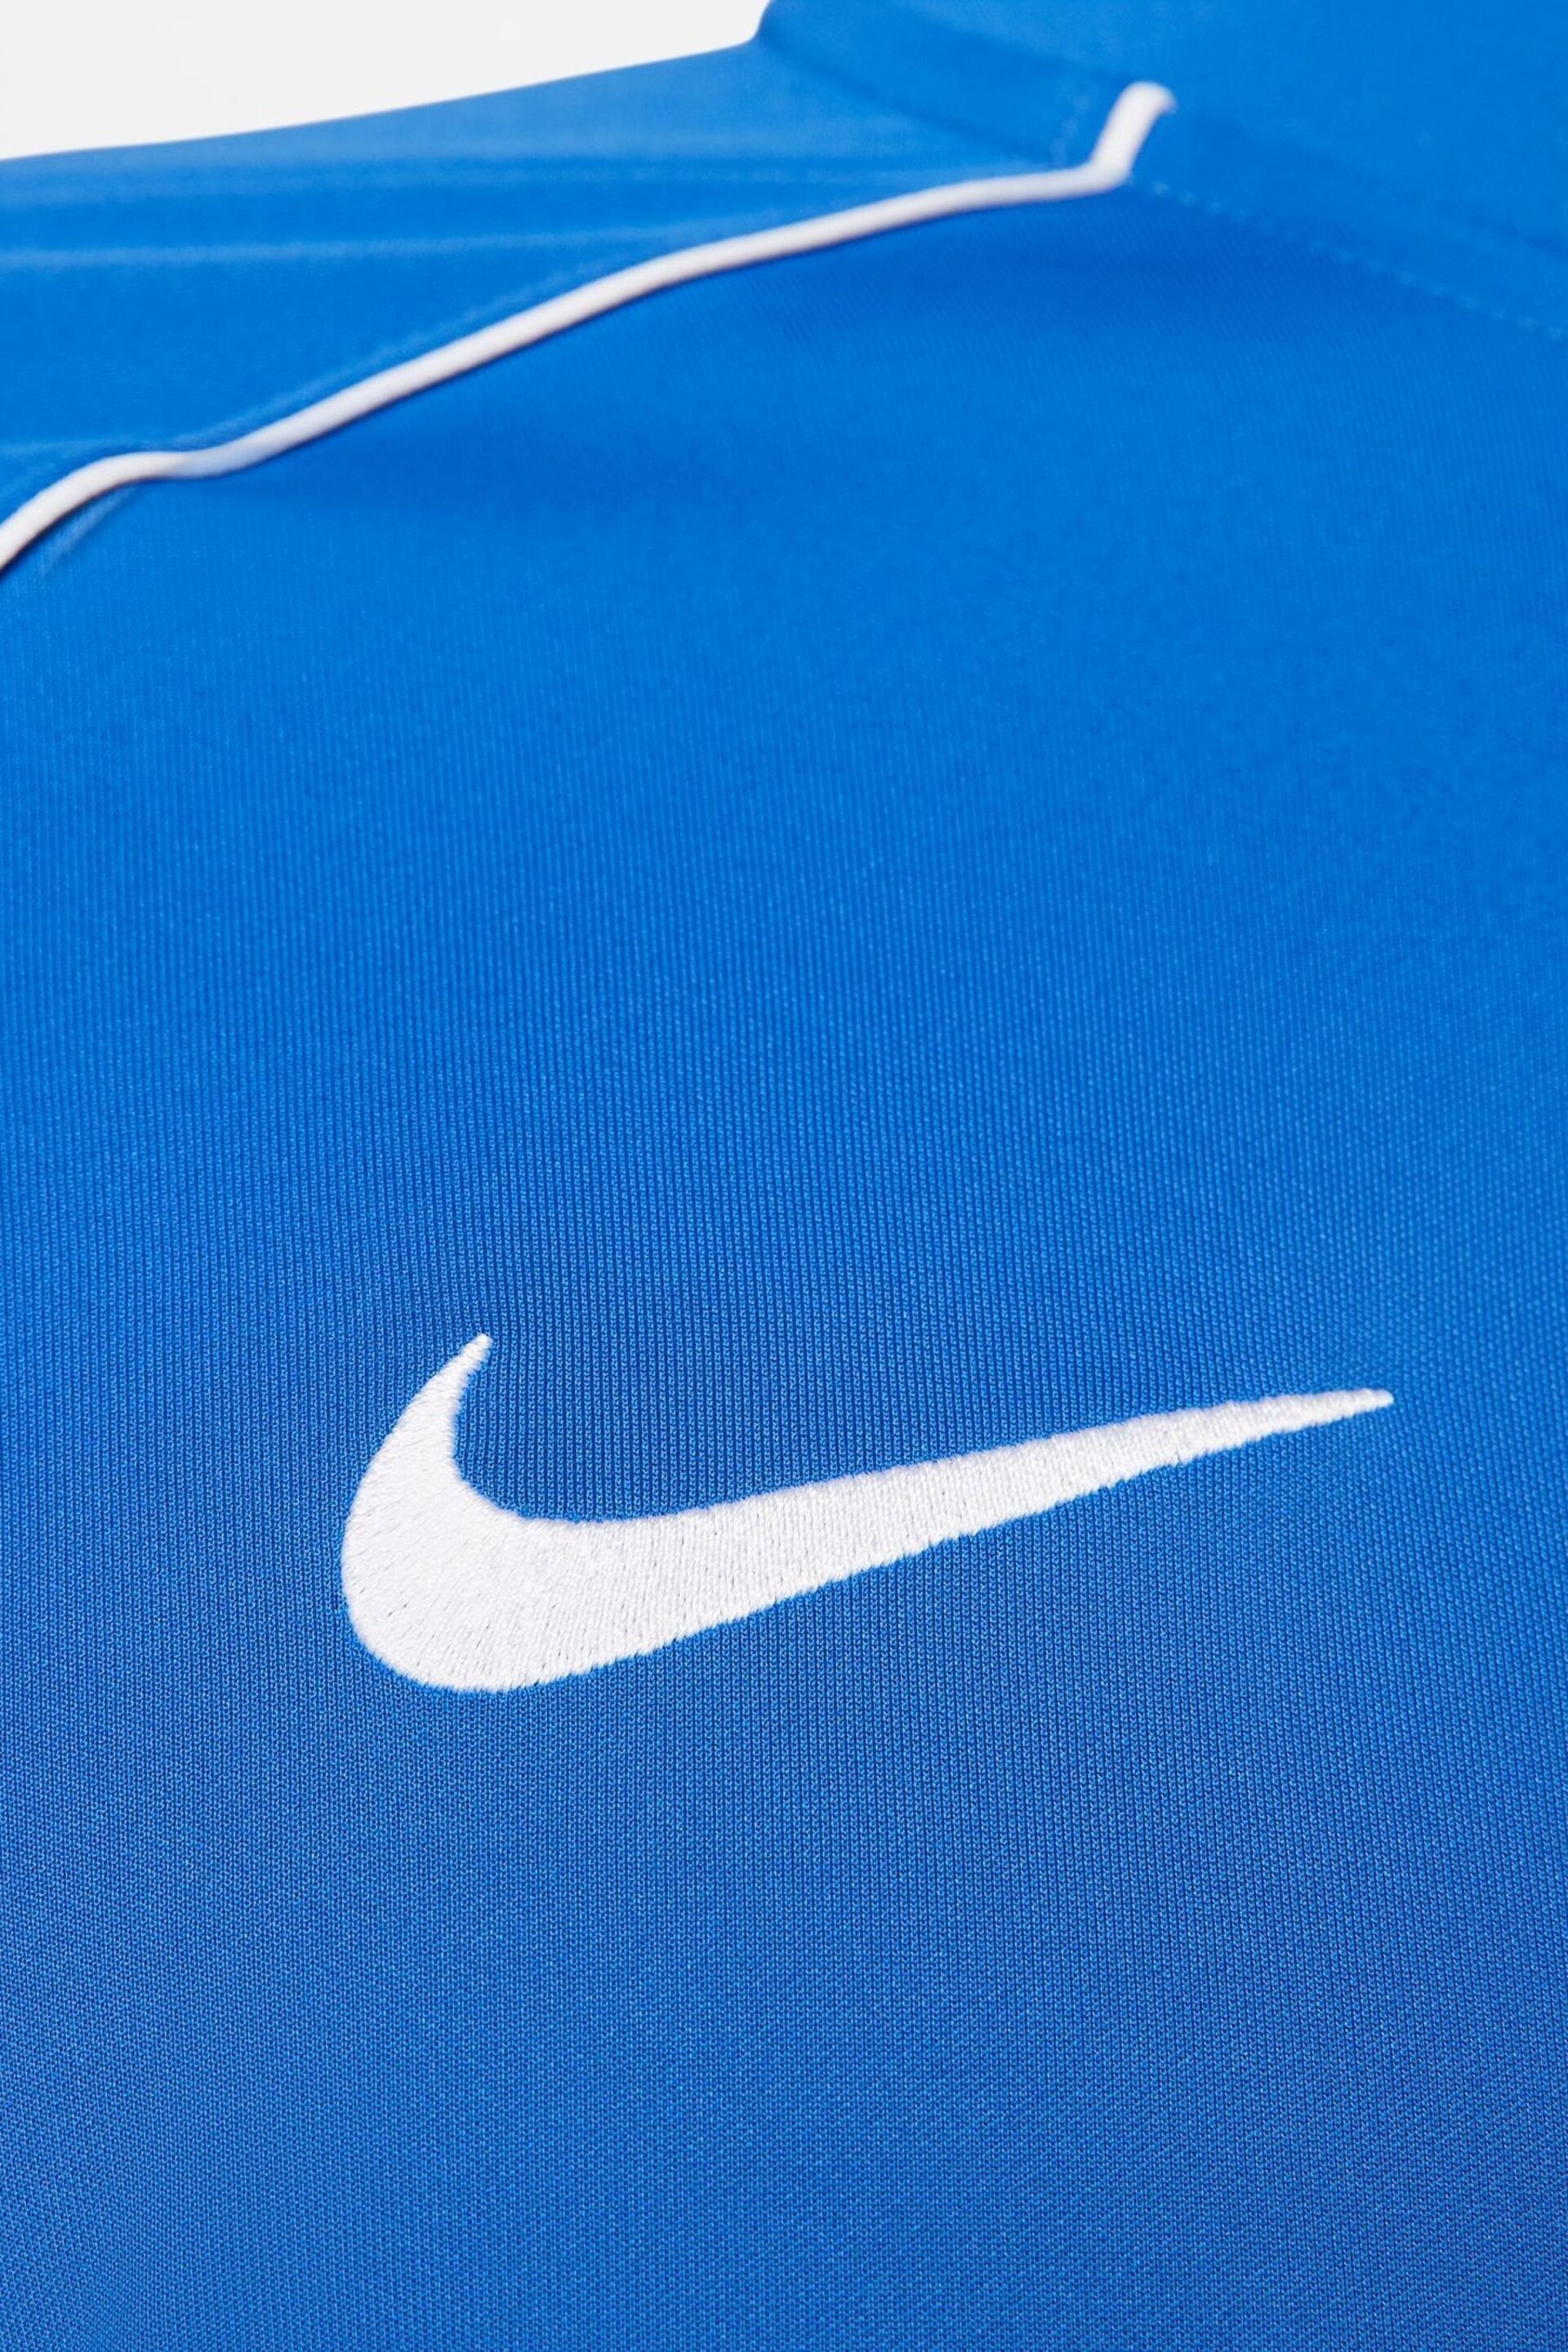 Nike Blue DriFIT Academy Pro Zip Up Training Top - Image 4 of 6